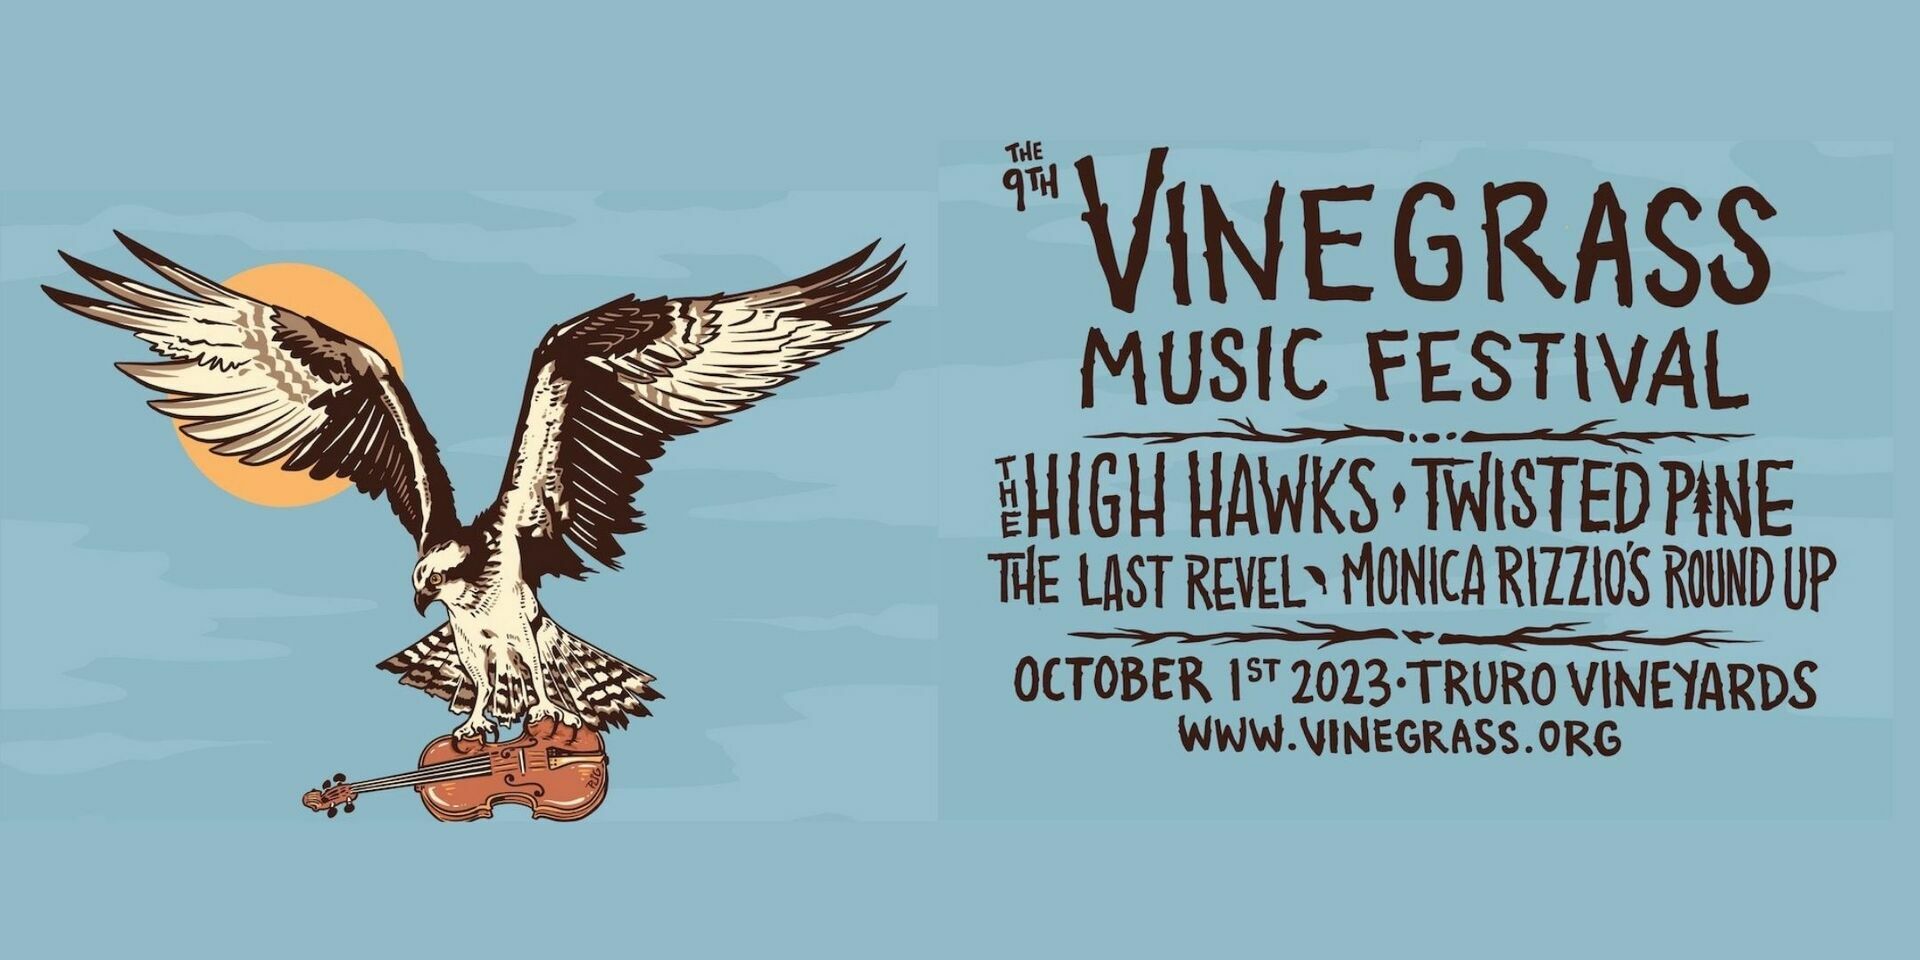 9th Annual Vinegrass Music Festival, Truro, Massachusetts, United States